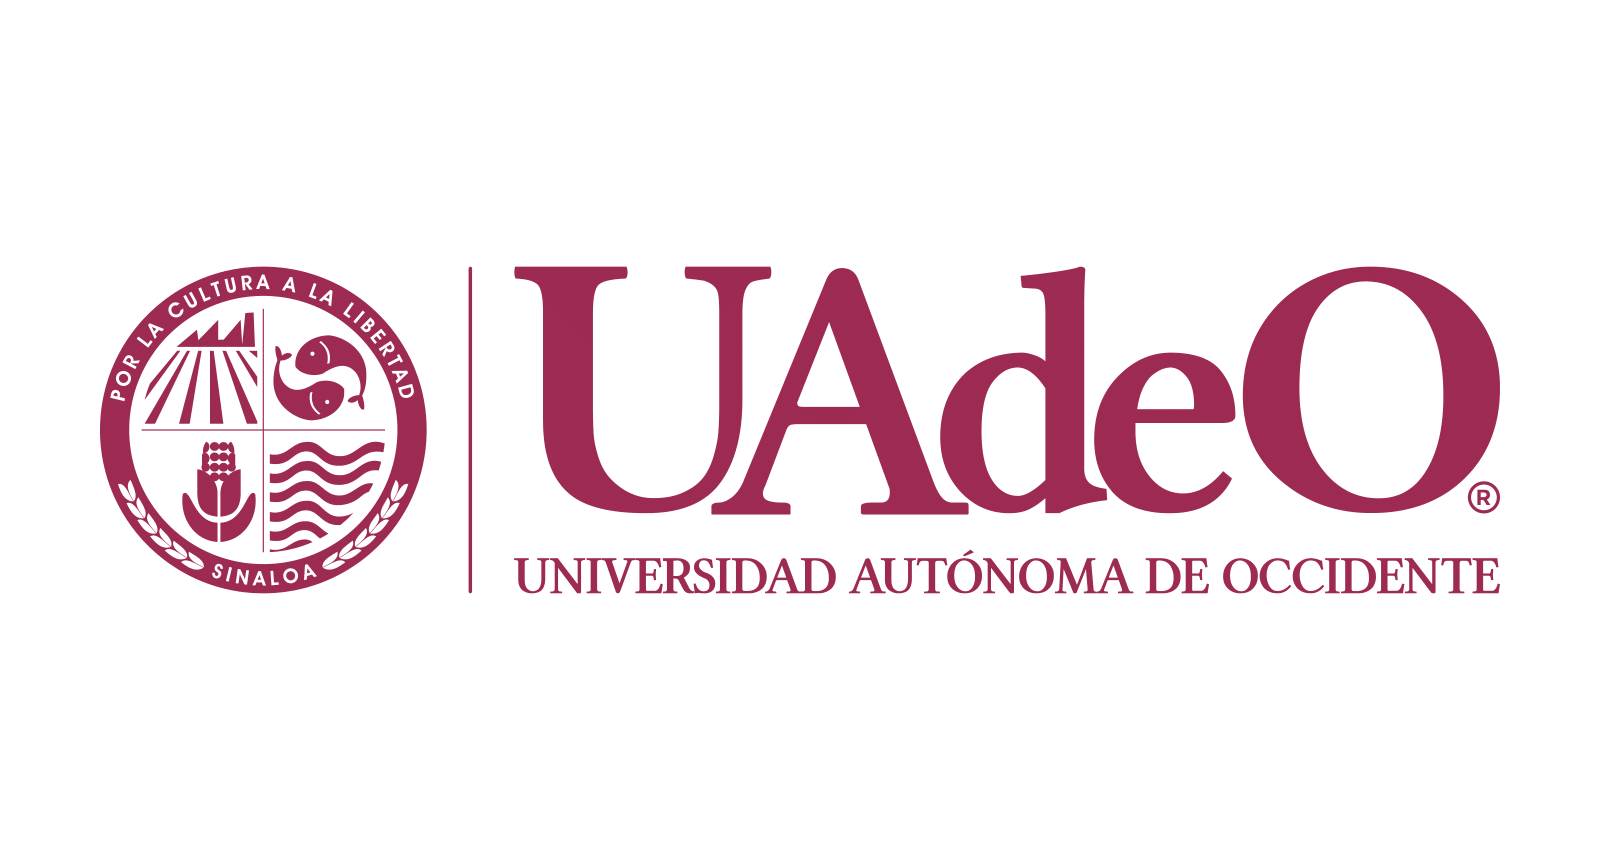 (c) Uadeo.mx